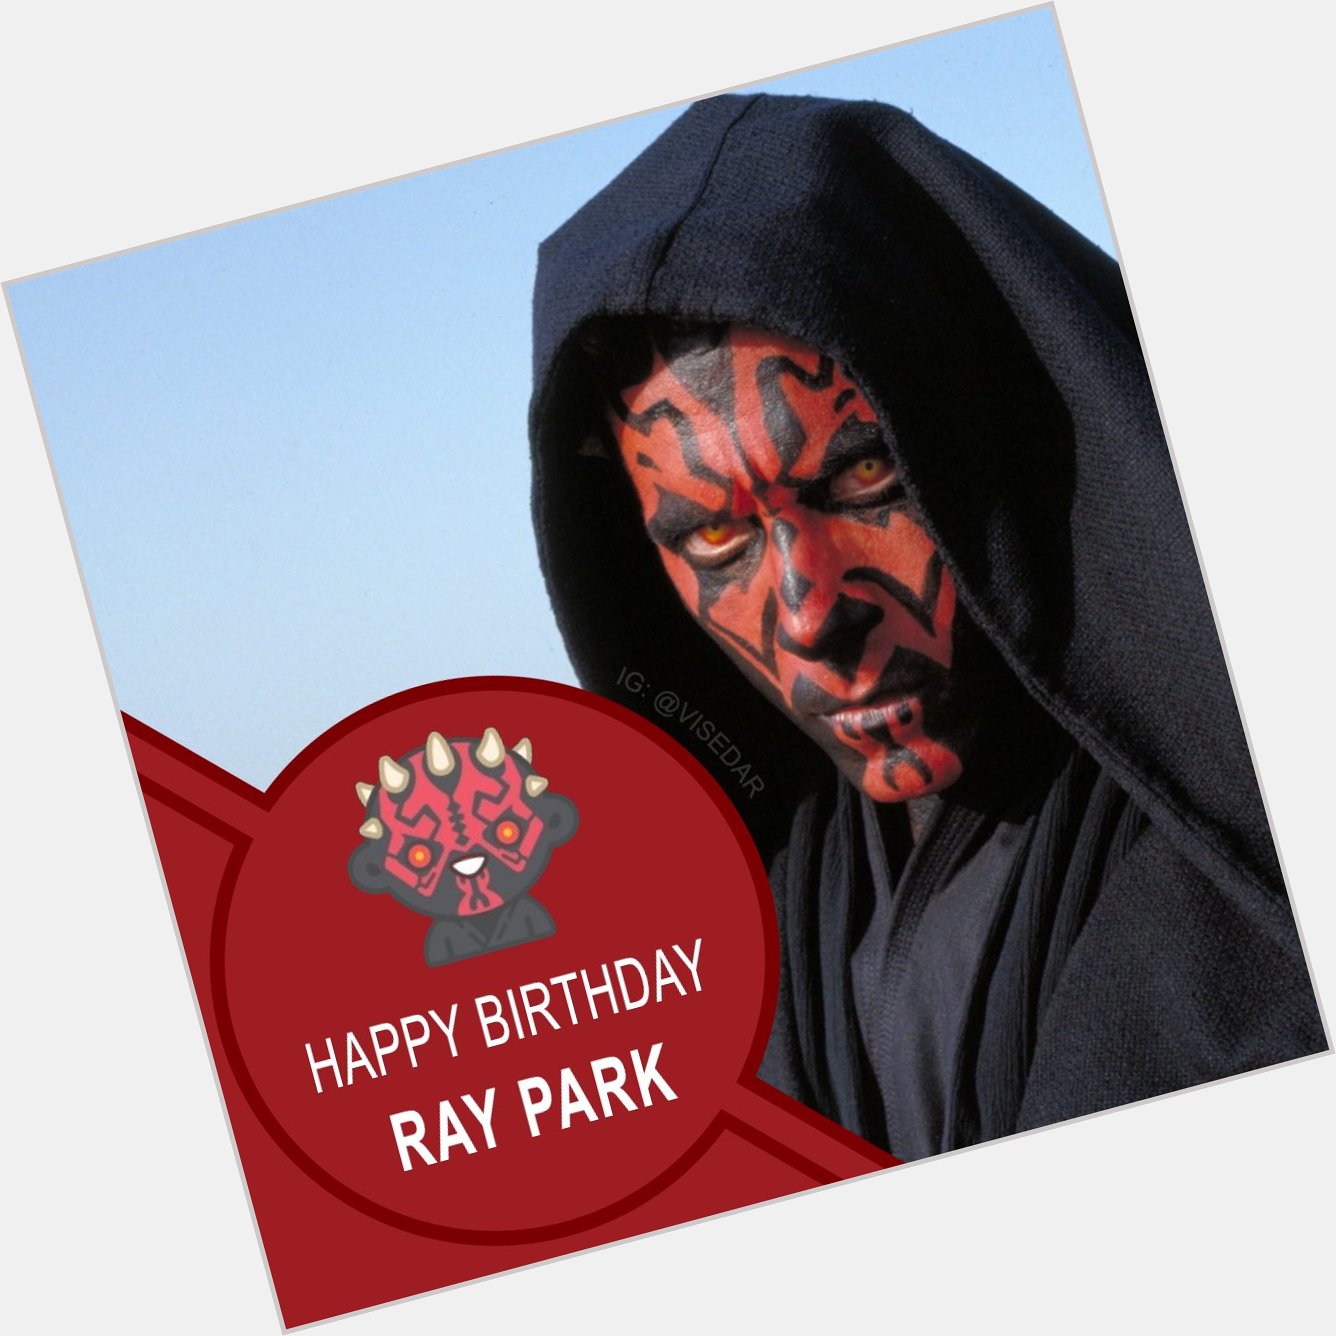 Happy Birthday to Ray Park aka aka     